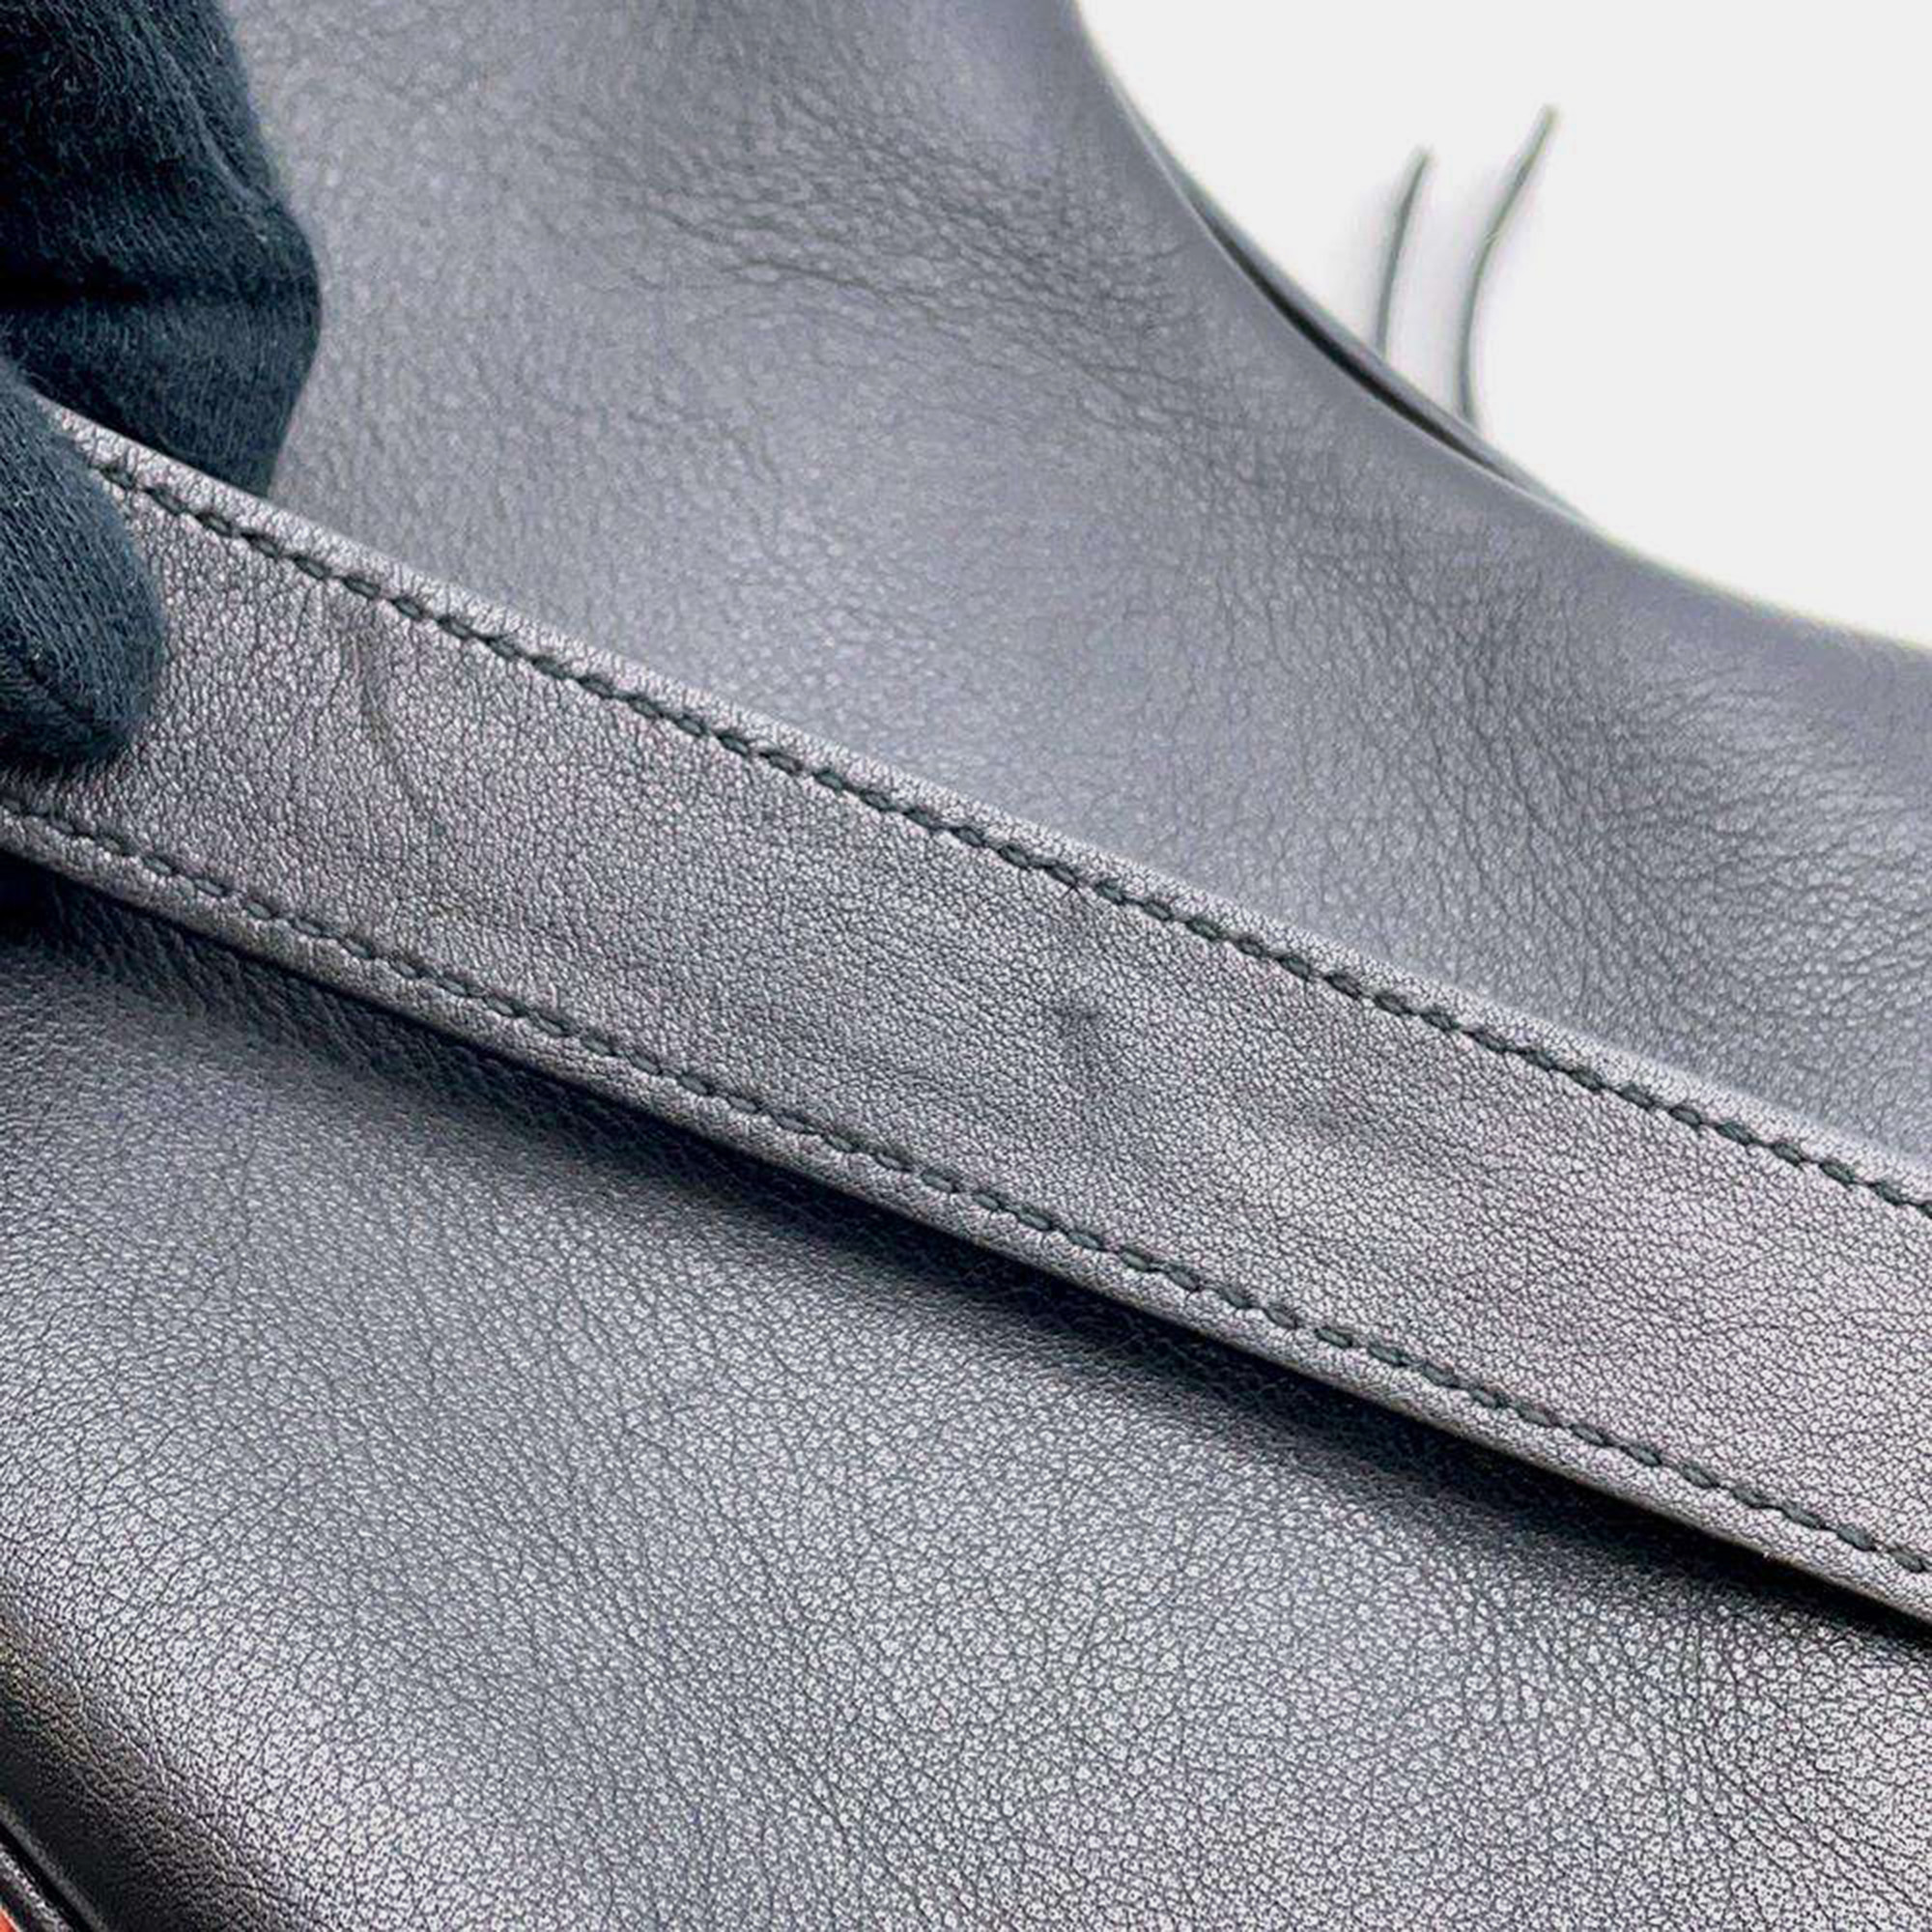 Gucci Black Leather Small Attache Shoulder Bag